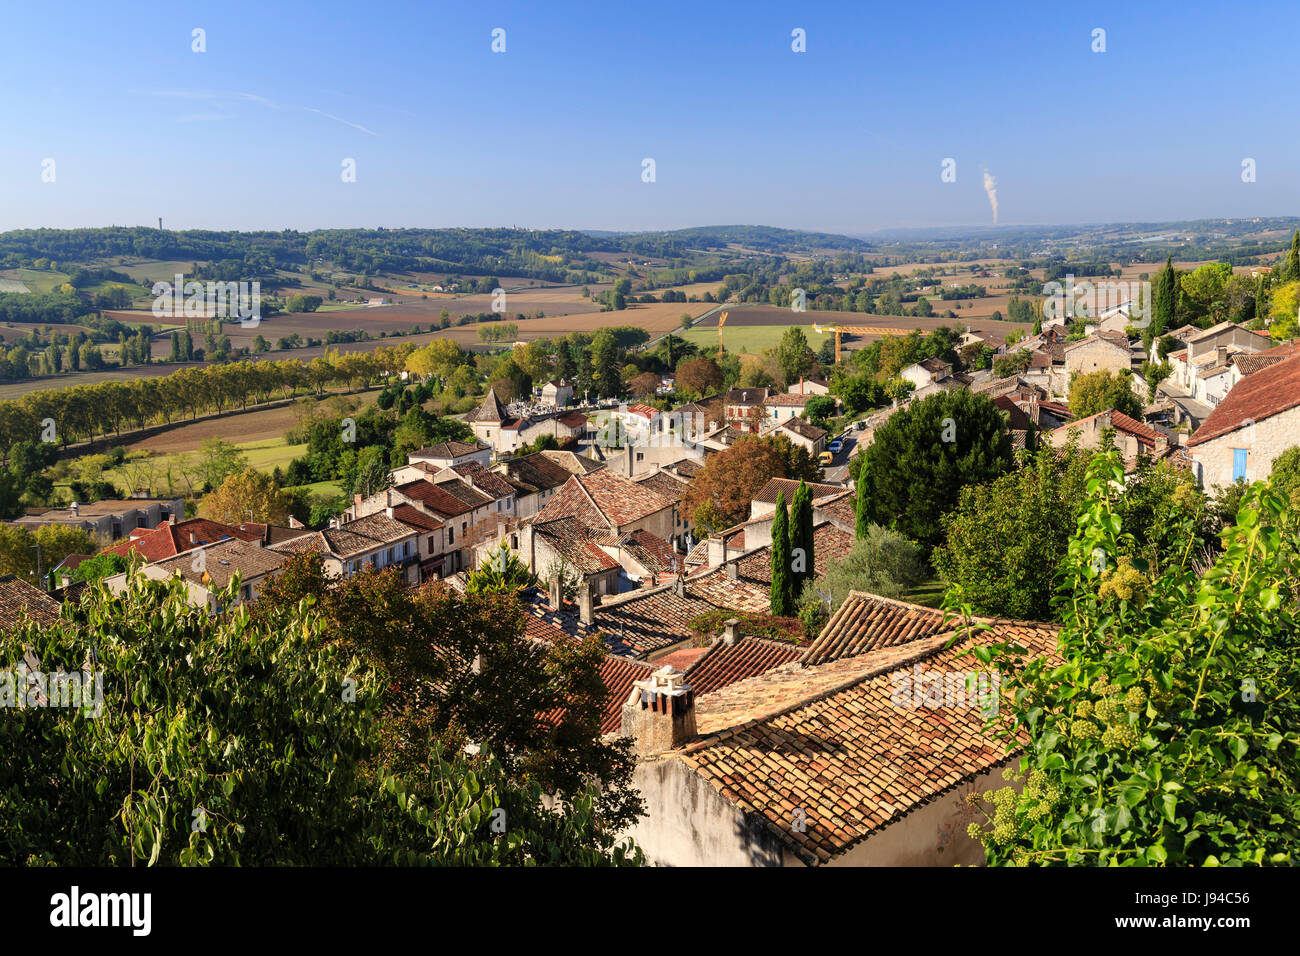 La France, Tarn et Garonne, Lauzerte, étiqueté Les Plus Beaux Villages de France (le plus beau village de France) Banque D'Images